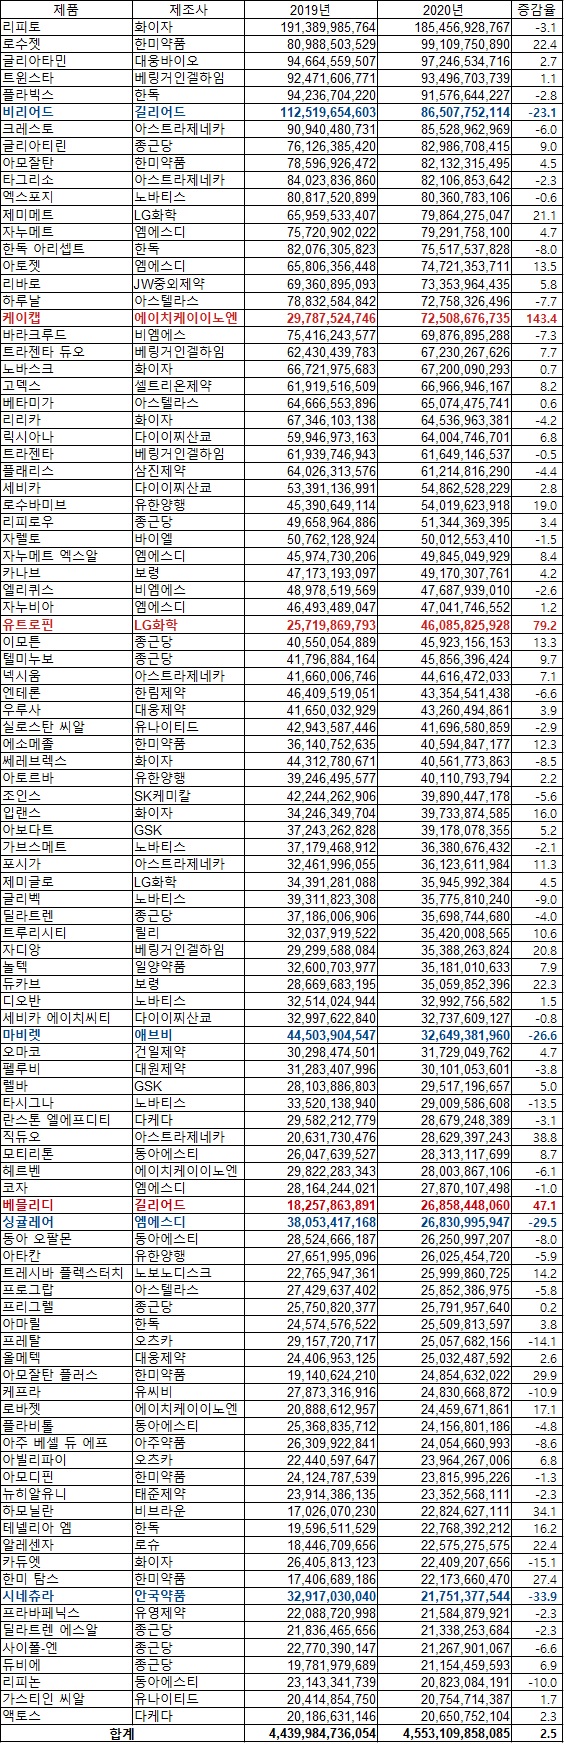 원외처방 상위 100개 품목(자료 유비스트, 단위 원, %))